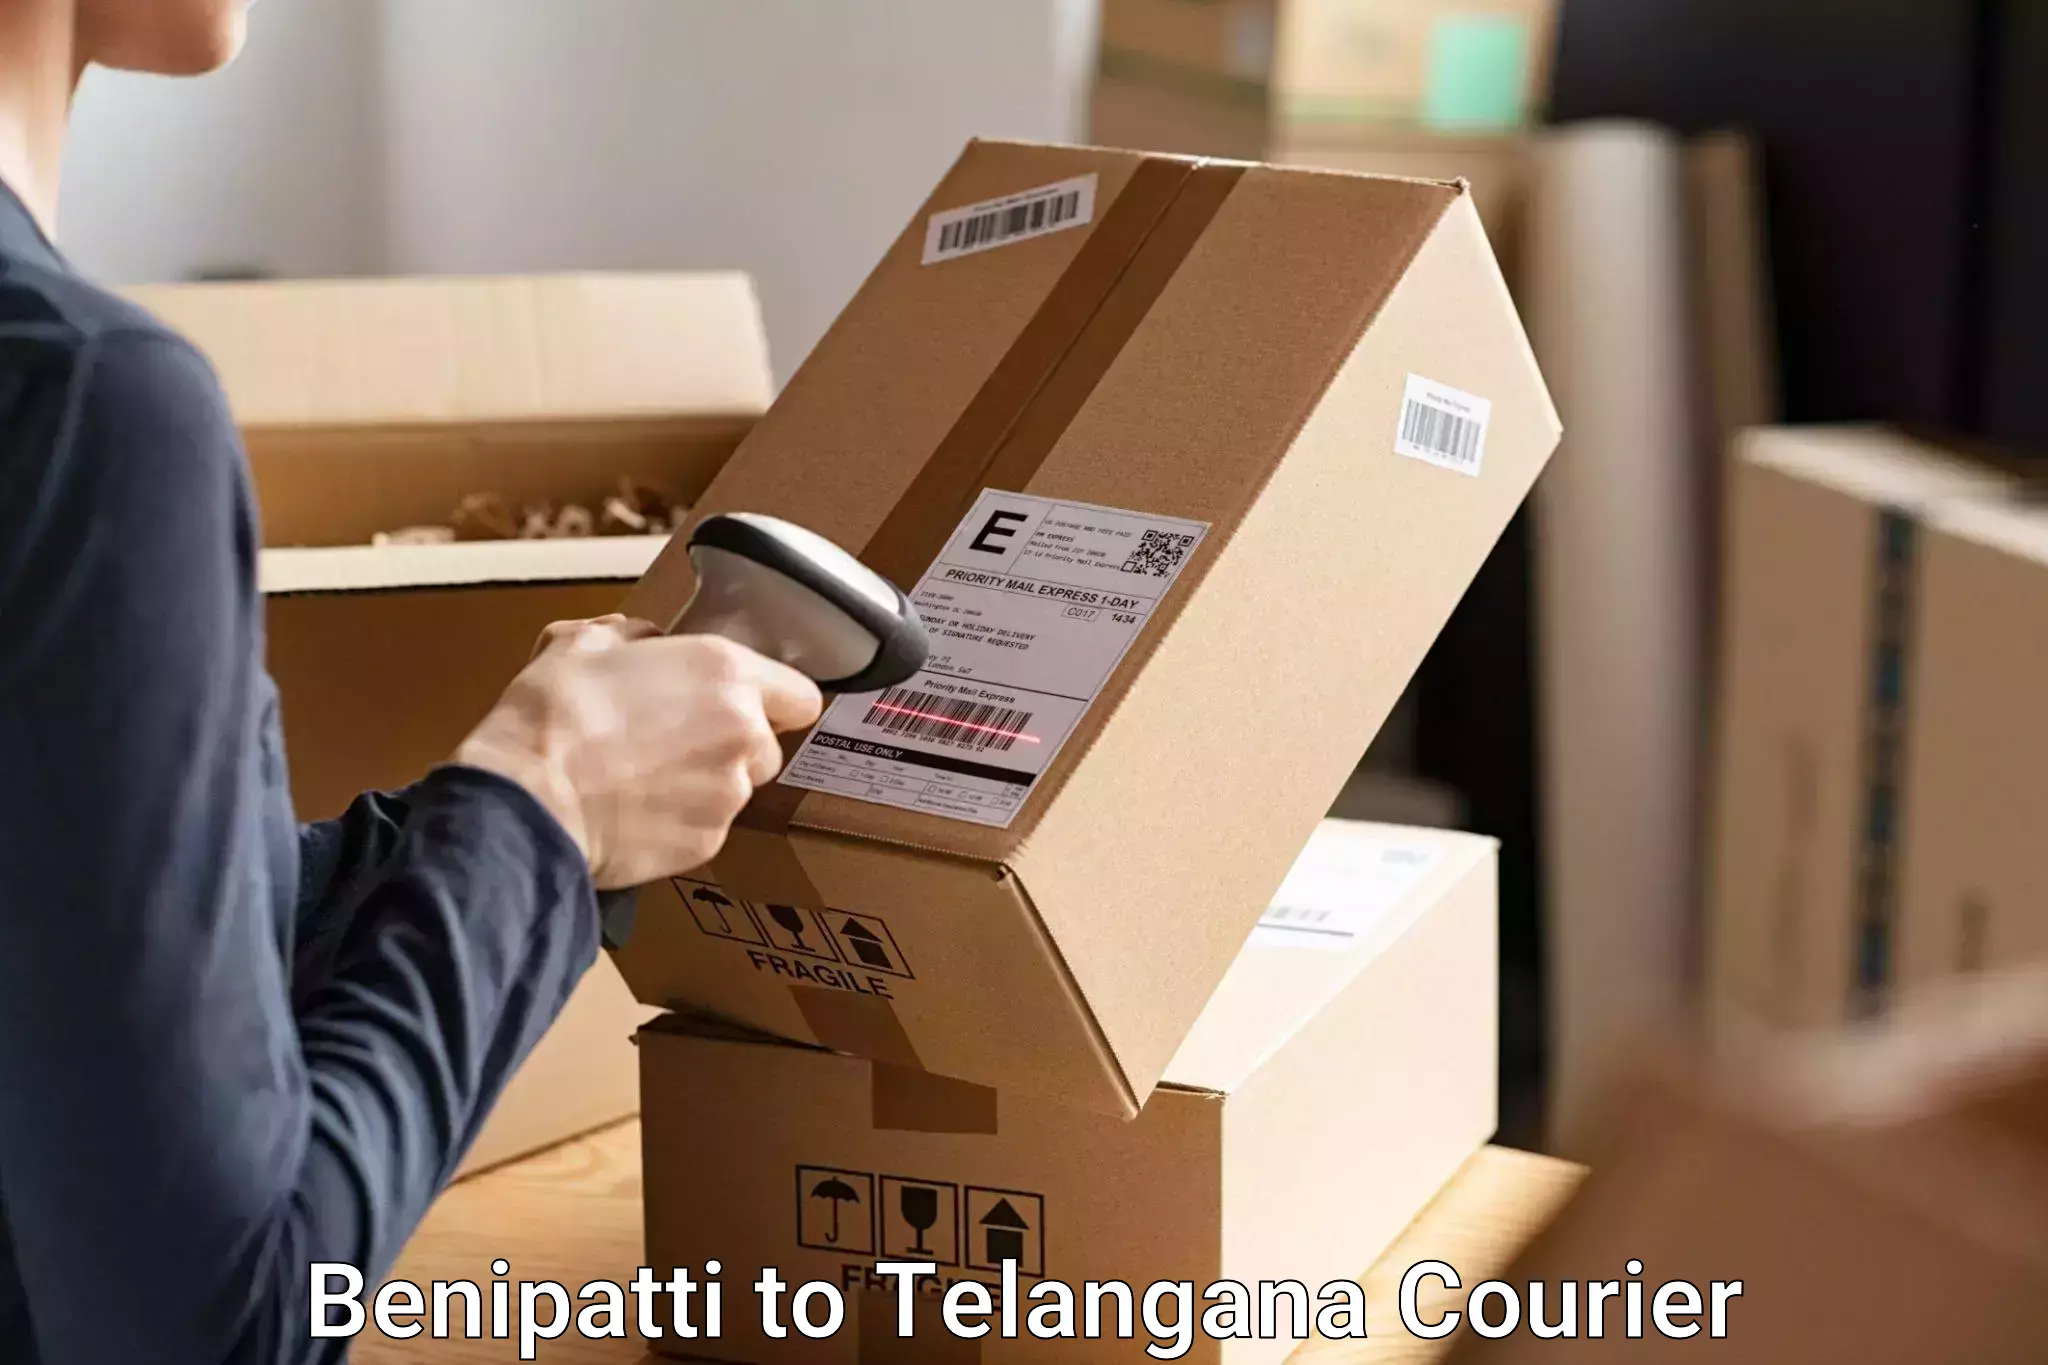 Baggage shipping advice Benipatti to Telangana